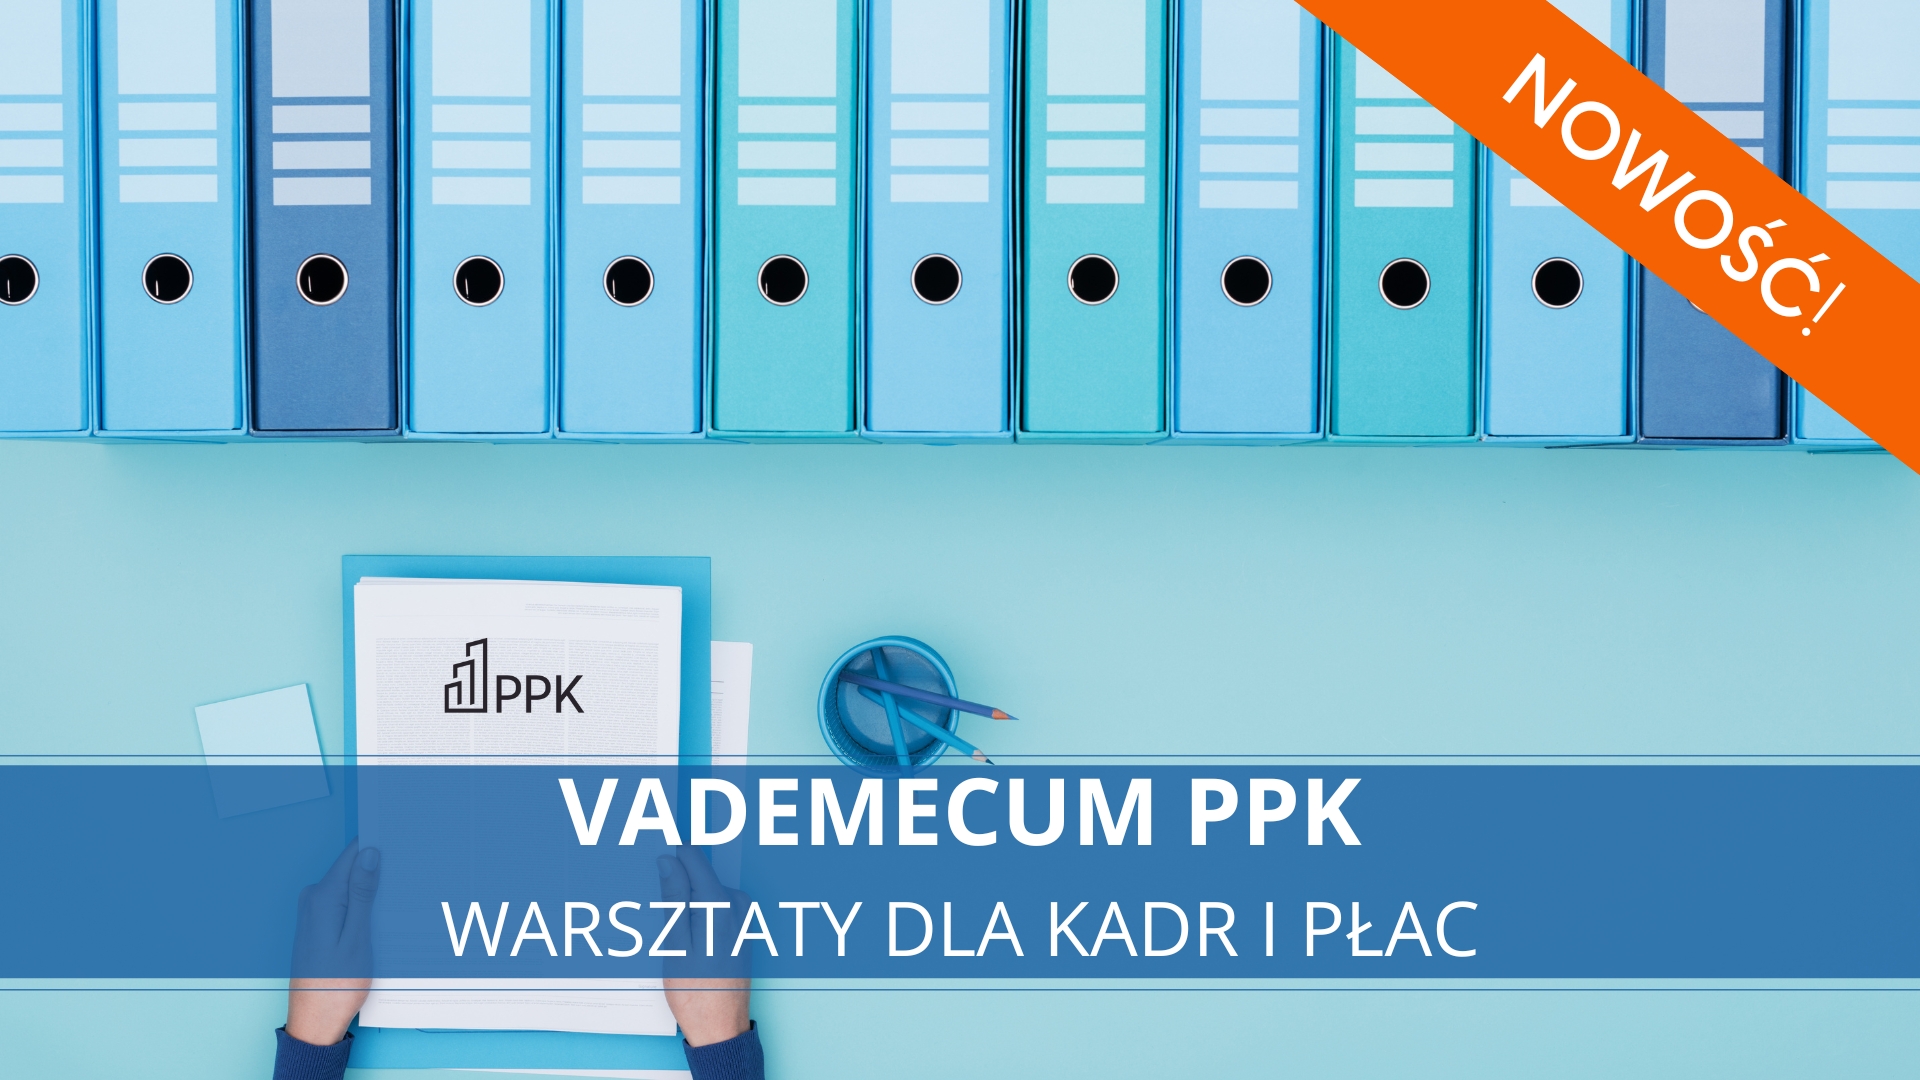 Vademecum PPK – nowe warsztaty dla kadr i płac